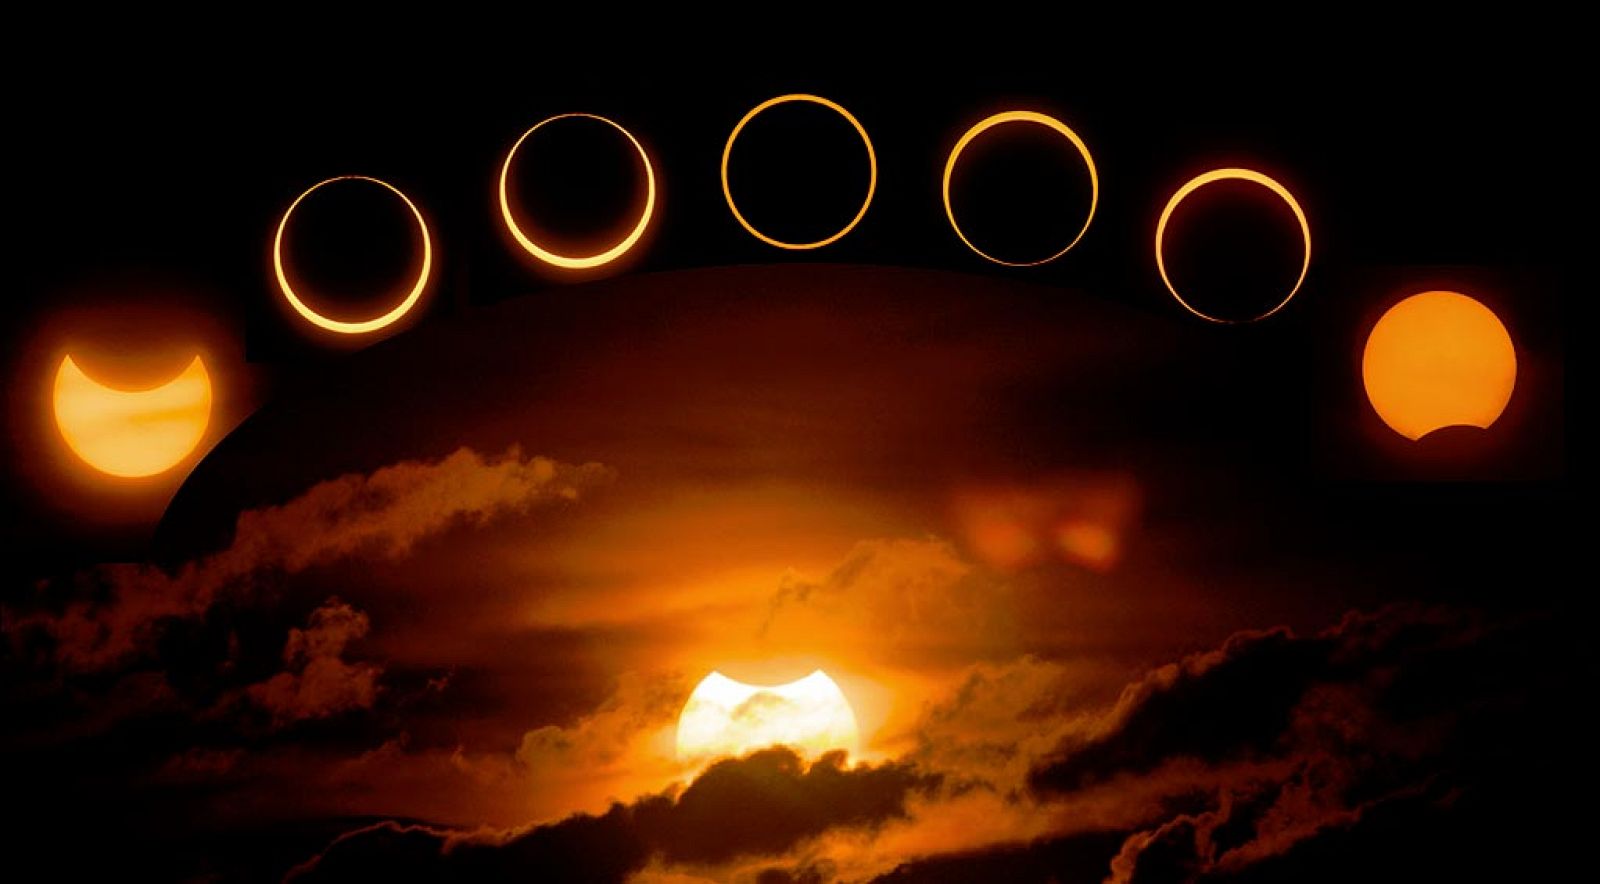 Imagen de un eclipse solar tomada en 2013 por Jay Pasachoff.